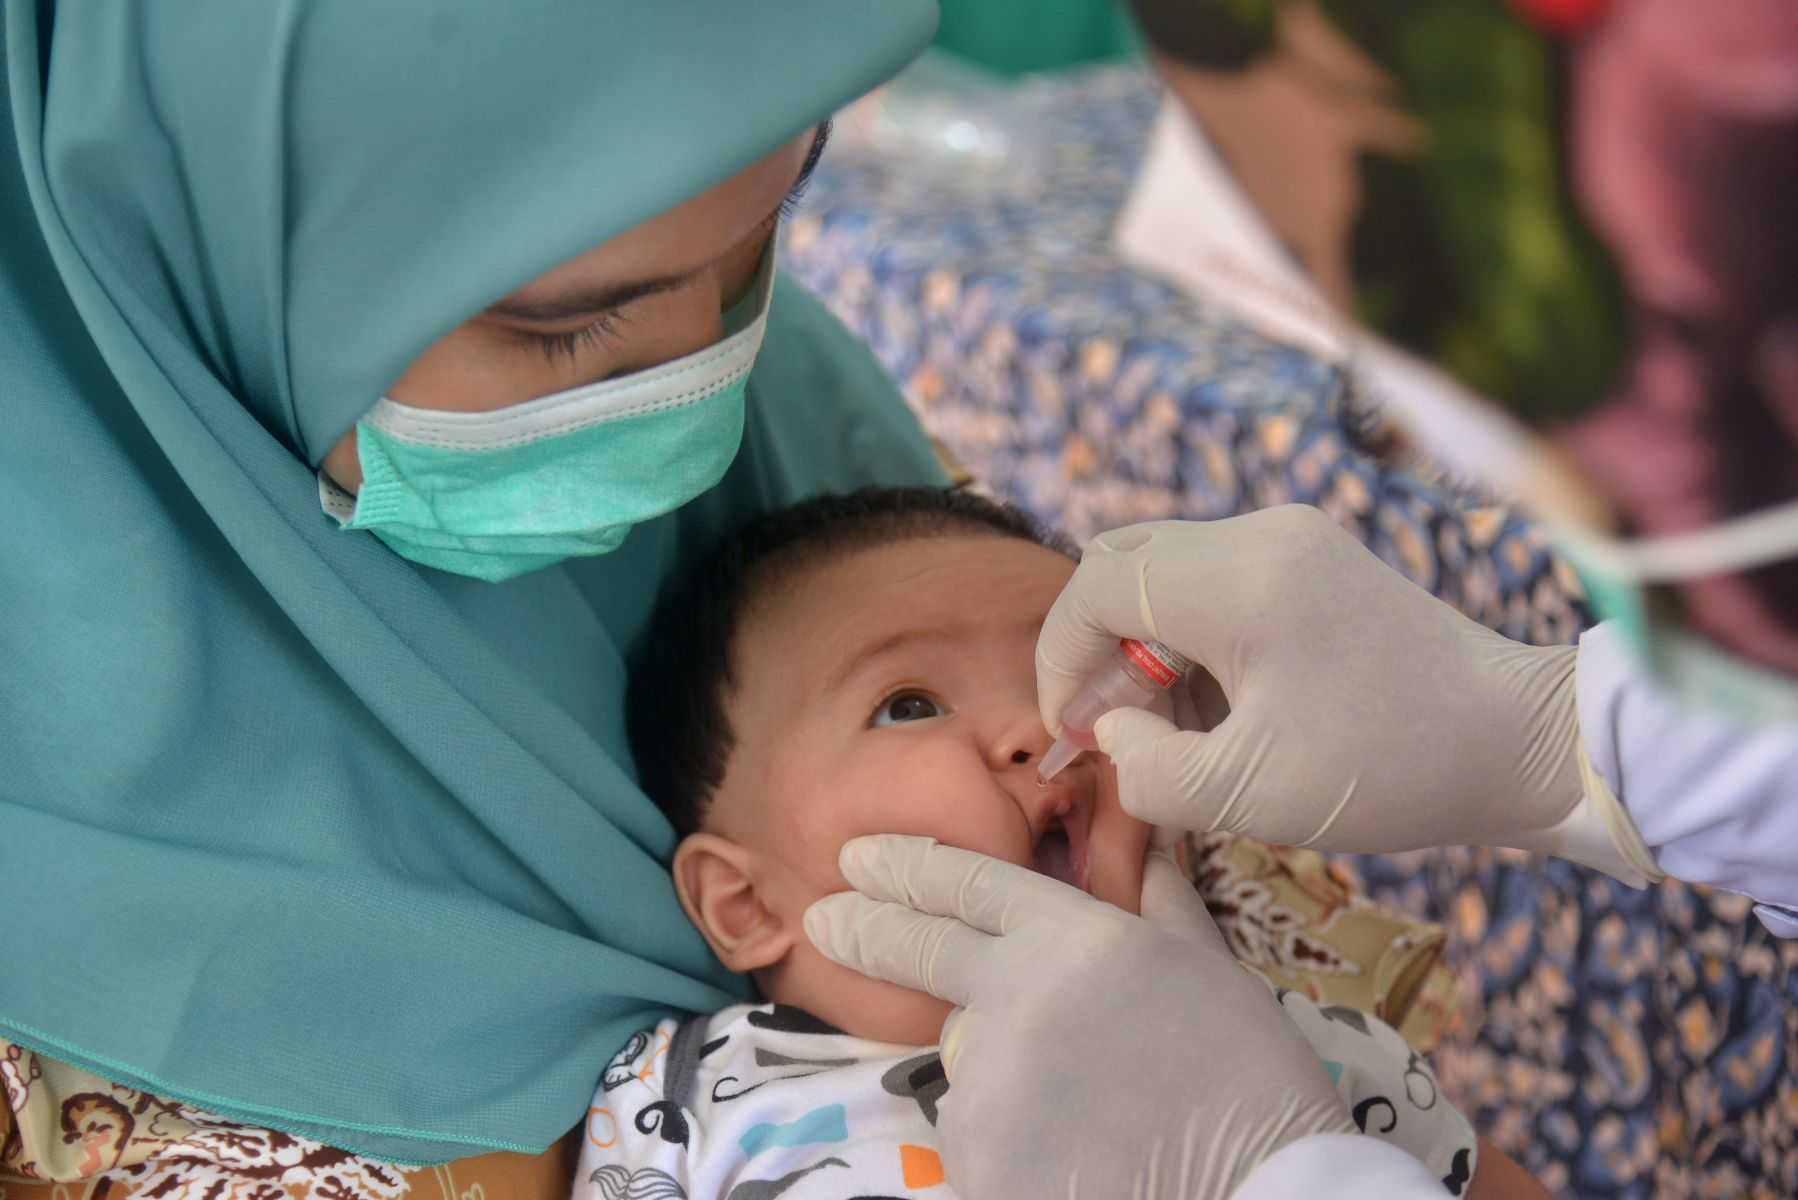 Peringati Pekan Imunisasi Dunia 2022, Kementerian Kesehatan Bersama GSK Indonesia Ajak Keluarga Lengkapi Imunisasi Anak